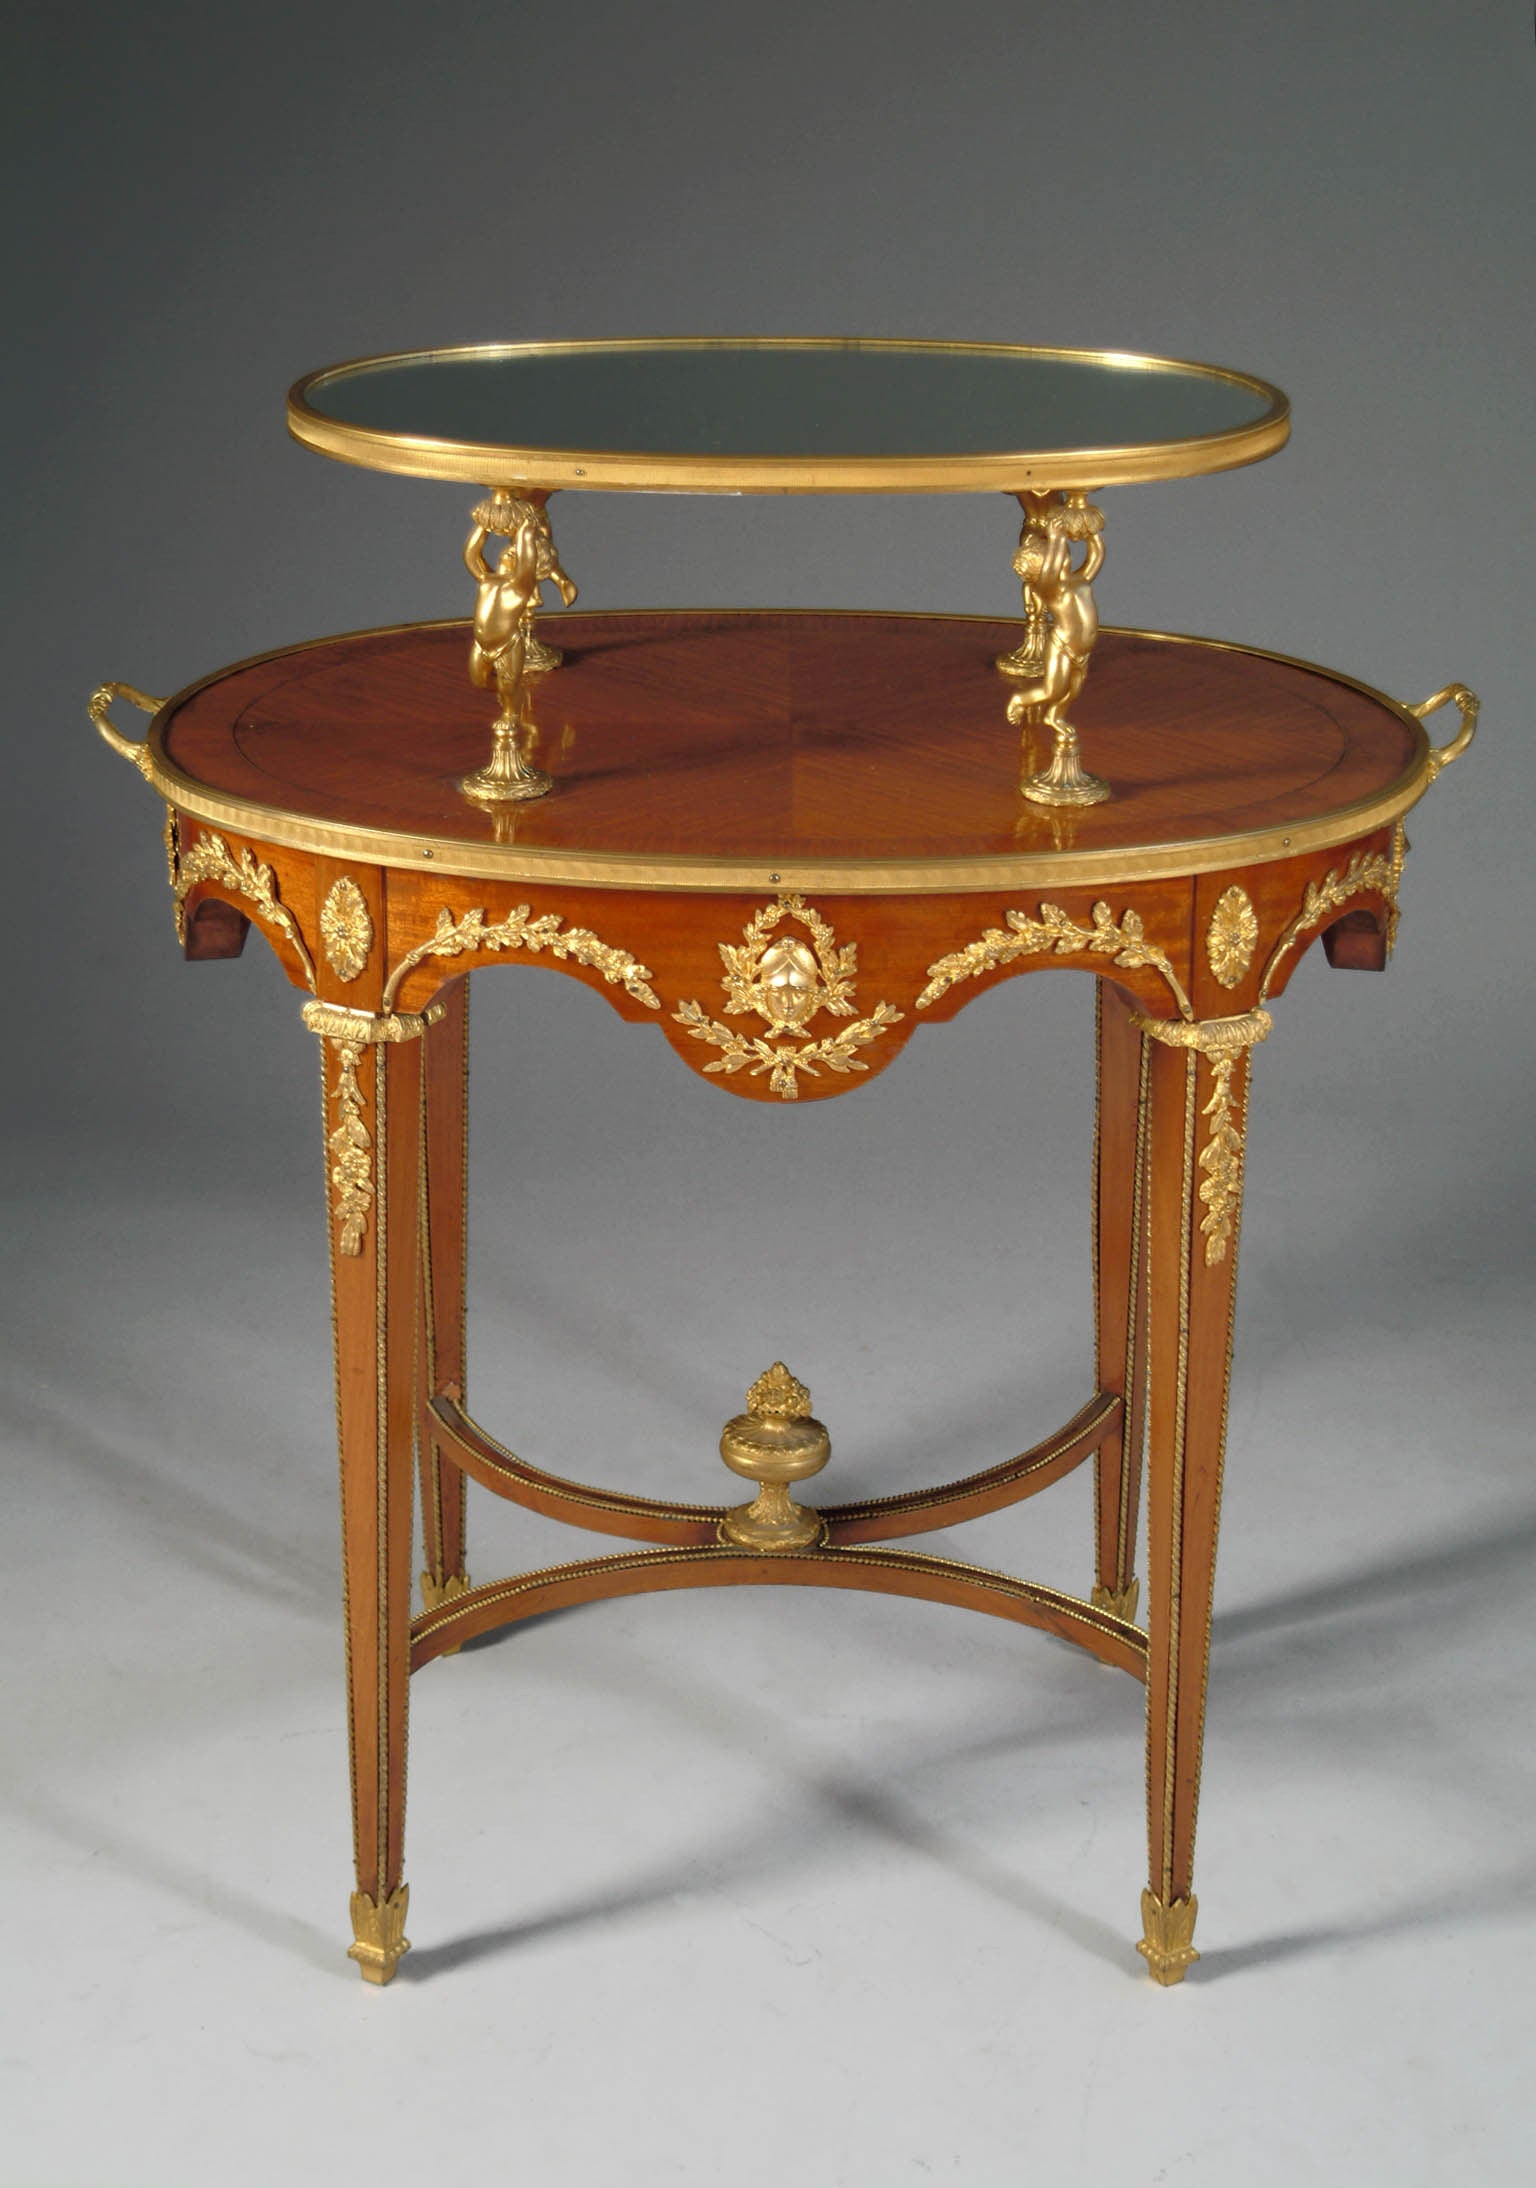 Table de pâtisserie française de style Louis XVI à deux niveaux montée sur bronze doré